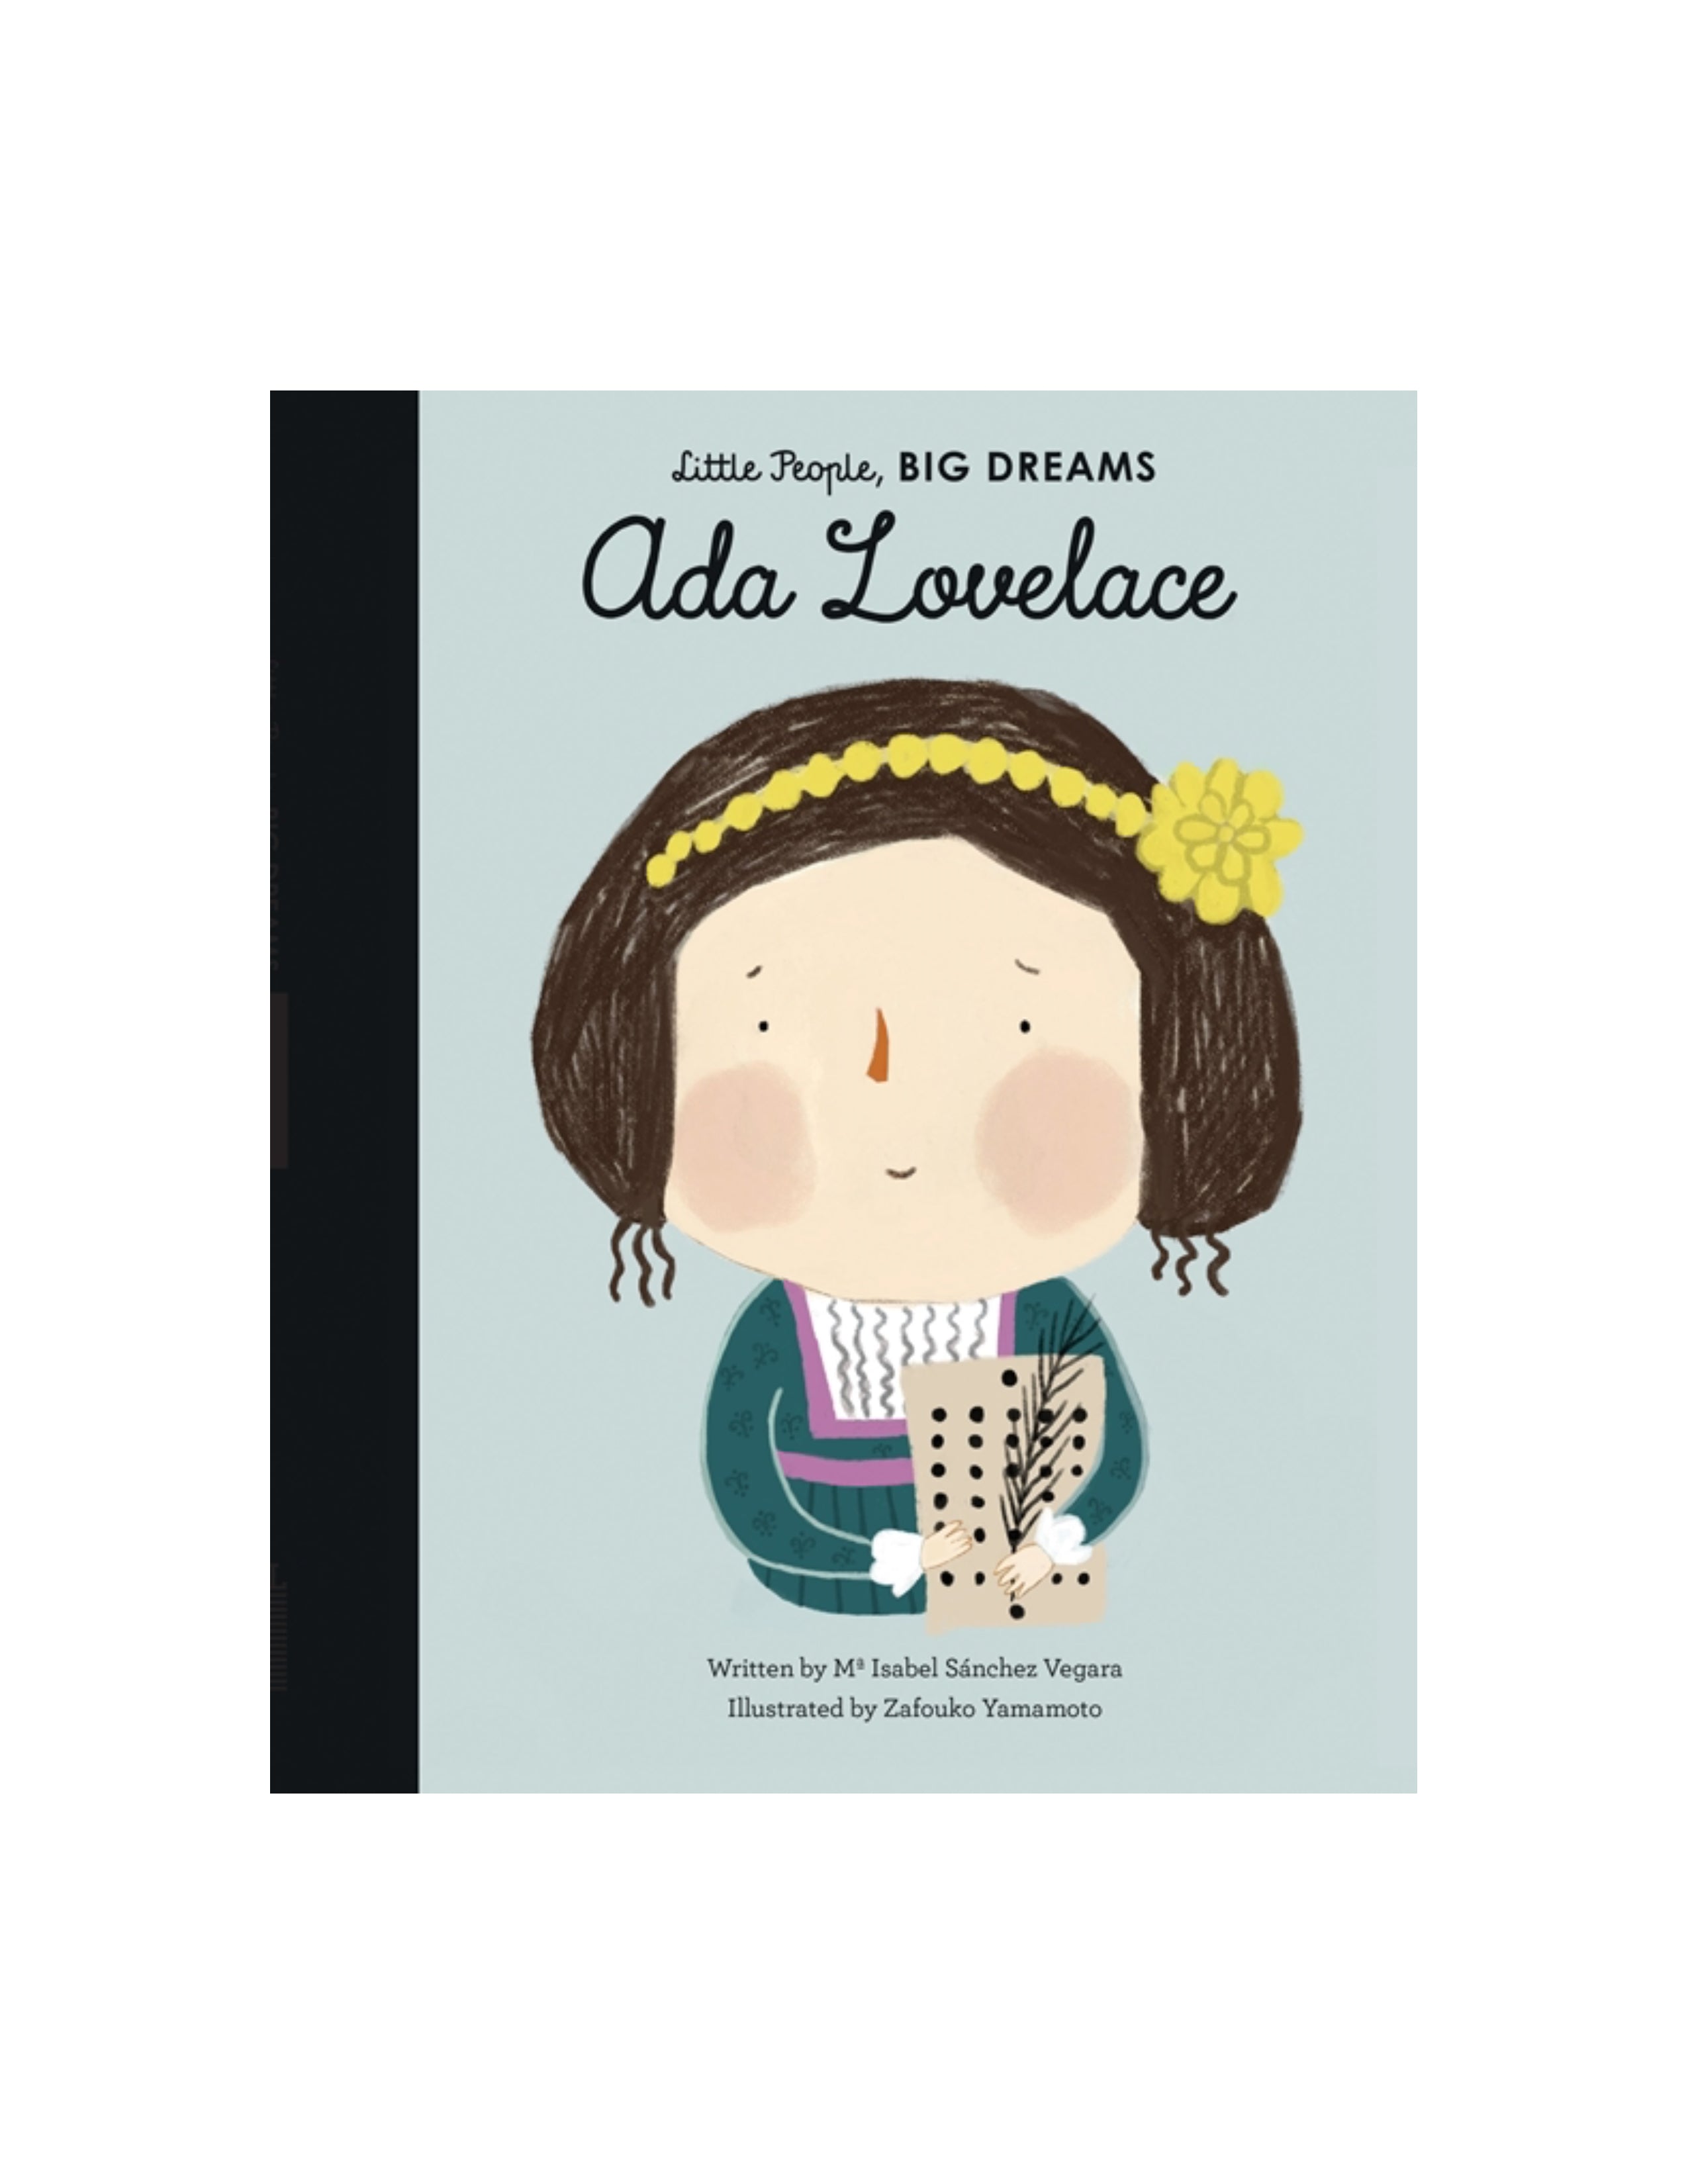 Little People BIG DREAMS: Ada Lovelace